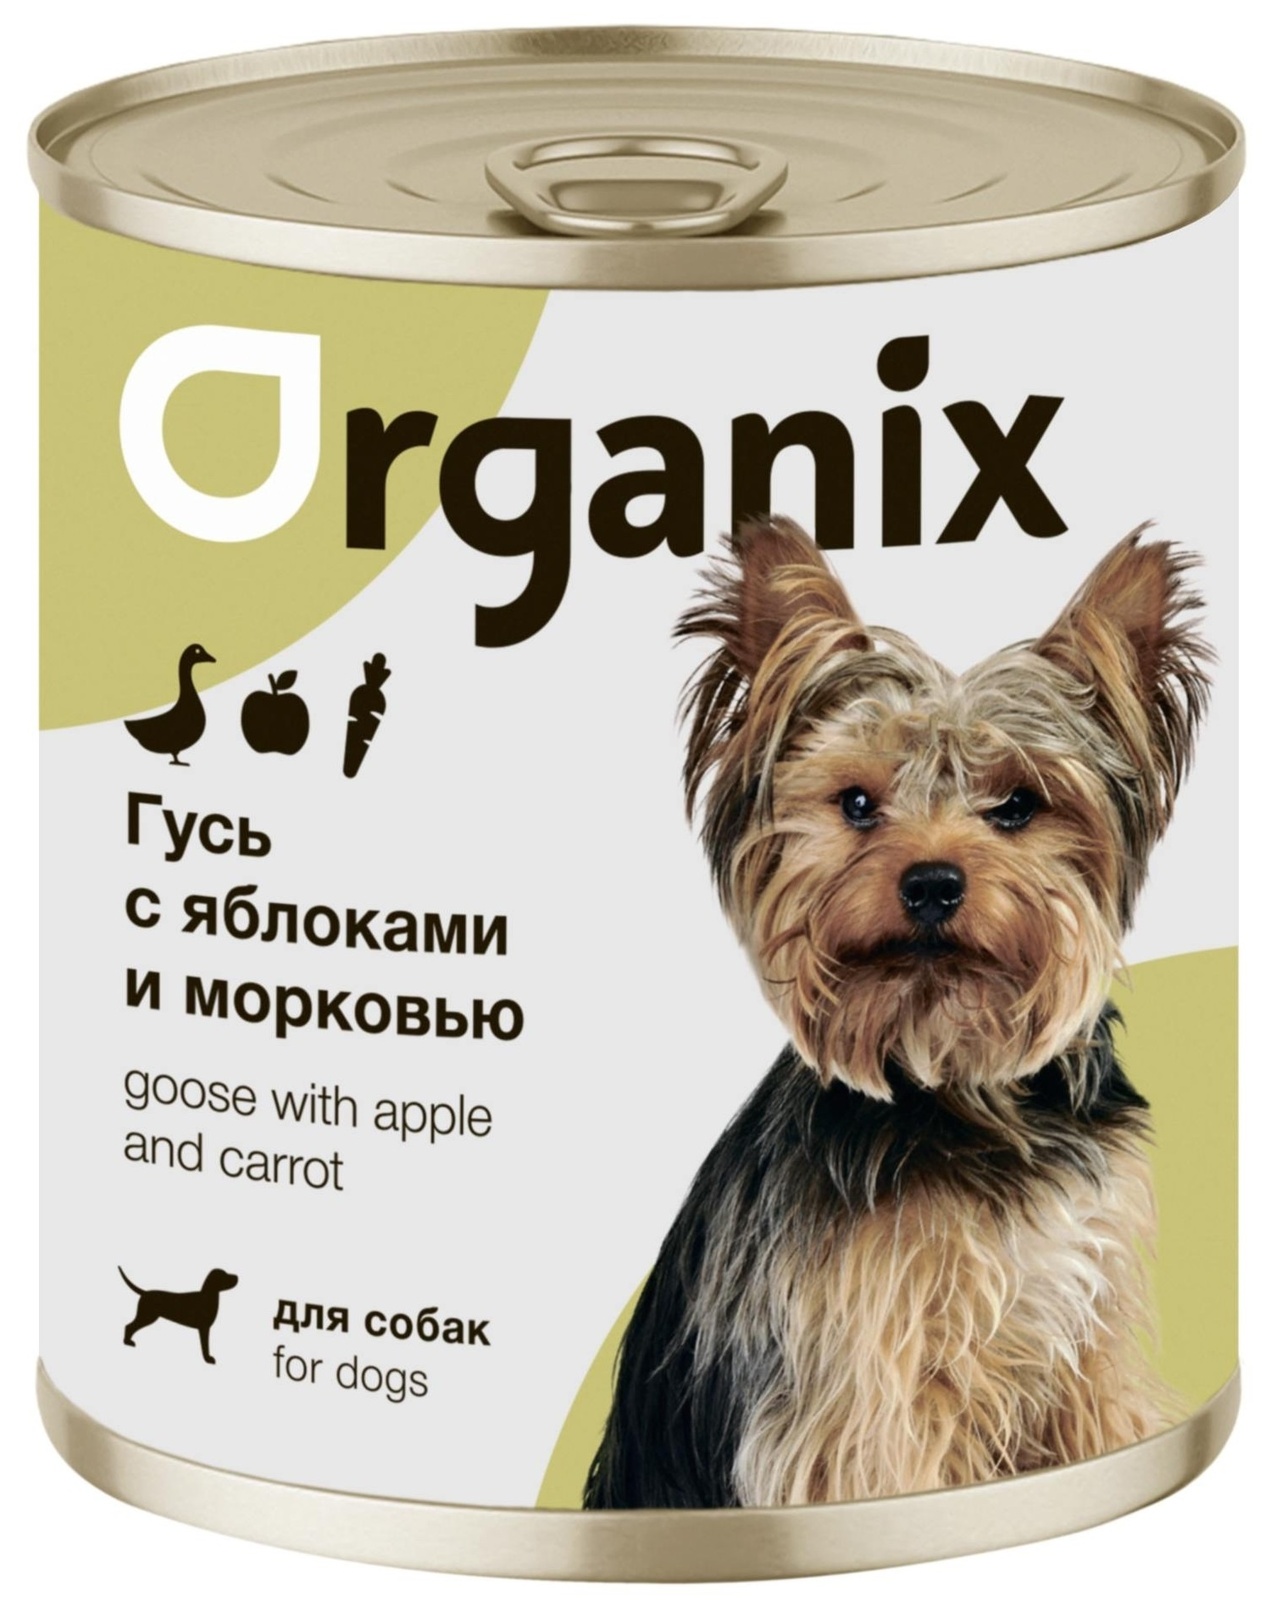 Organix консервы Organix консервы для собак Фрикасе из гуся с яблоками и морковкой (400 г) organix консервы organix консервы для собак фрикасе из гуся с яблоками и морковкой 400 г